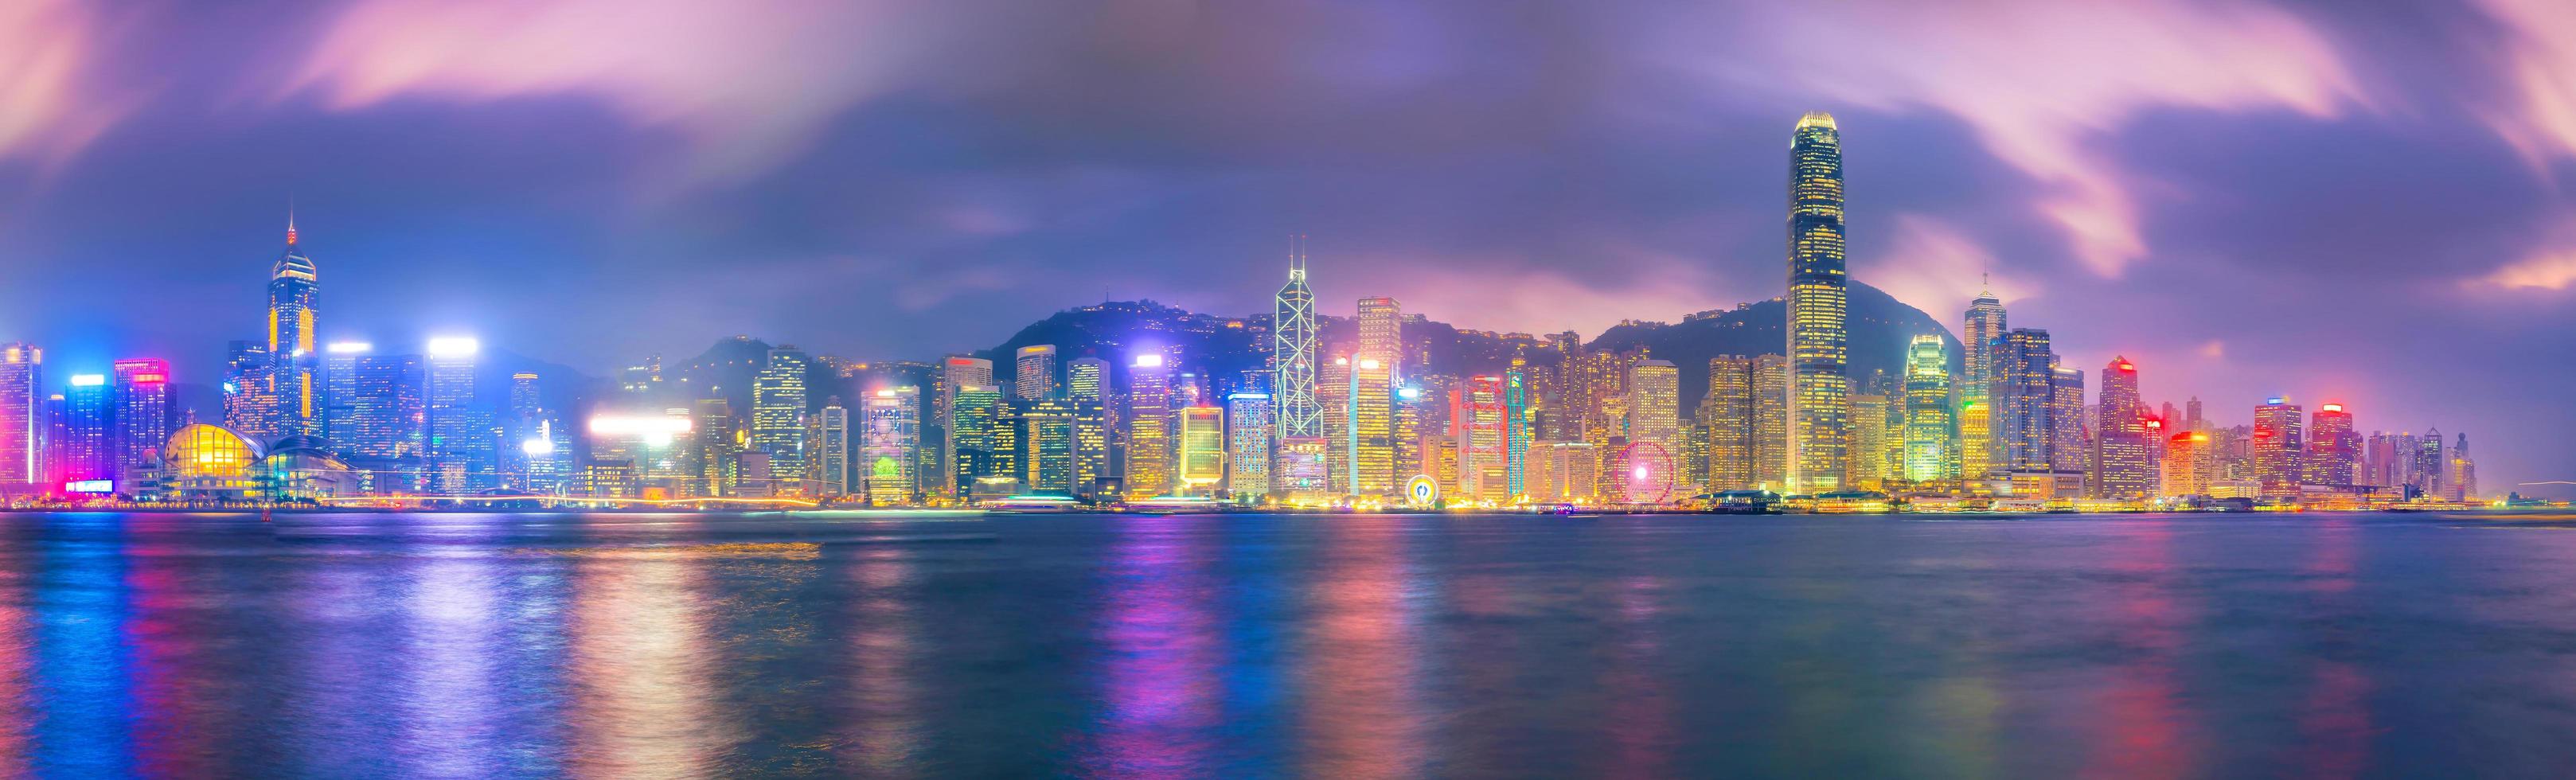 Skyline der Stadt Hongkong in China Panorama foto